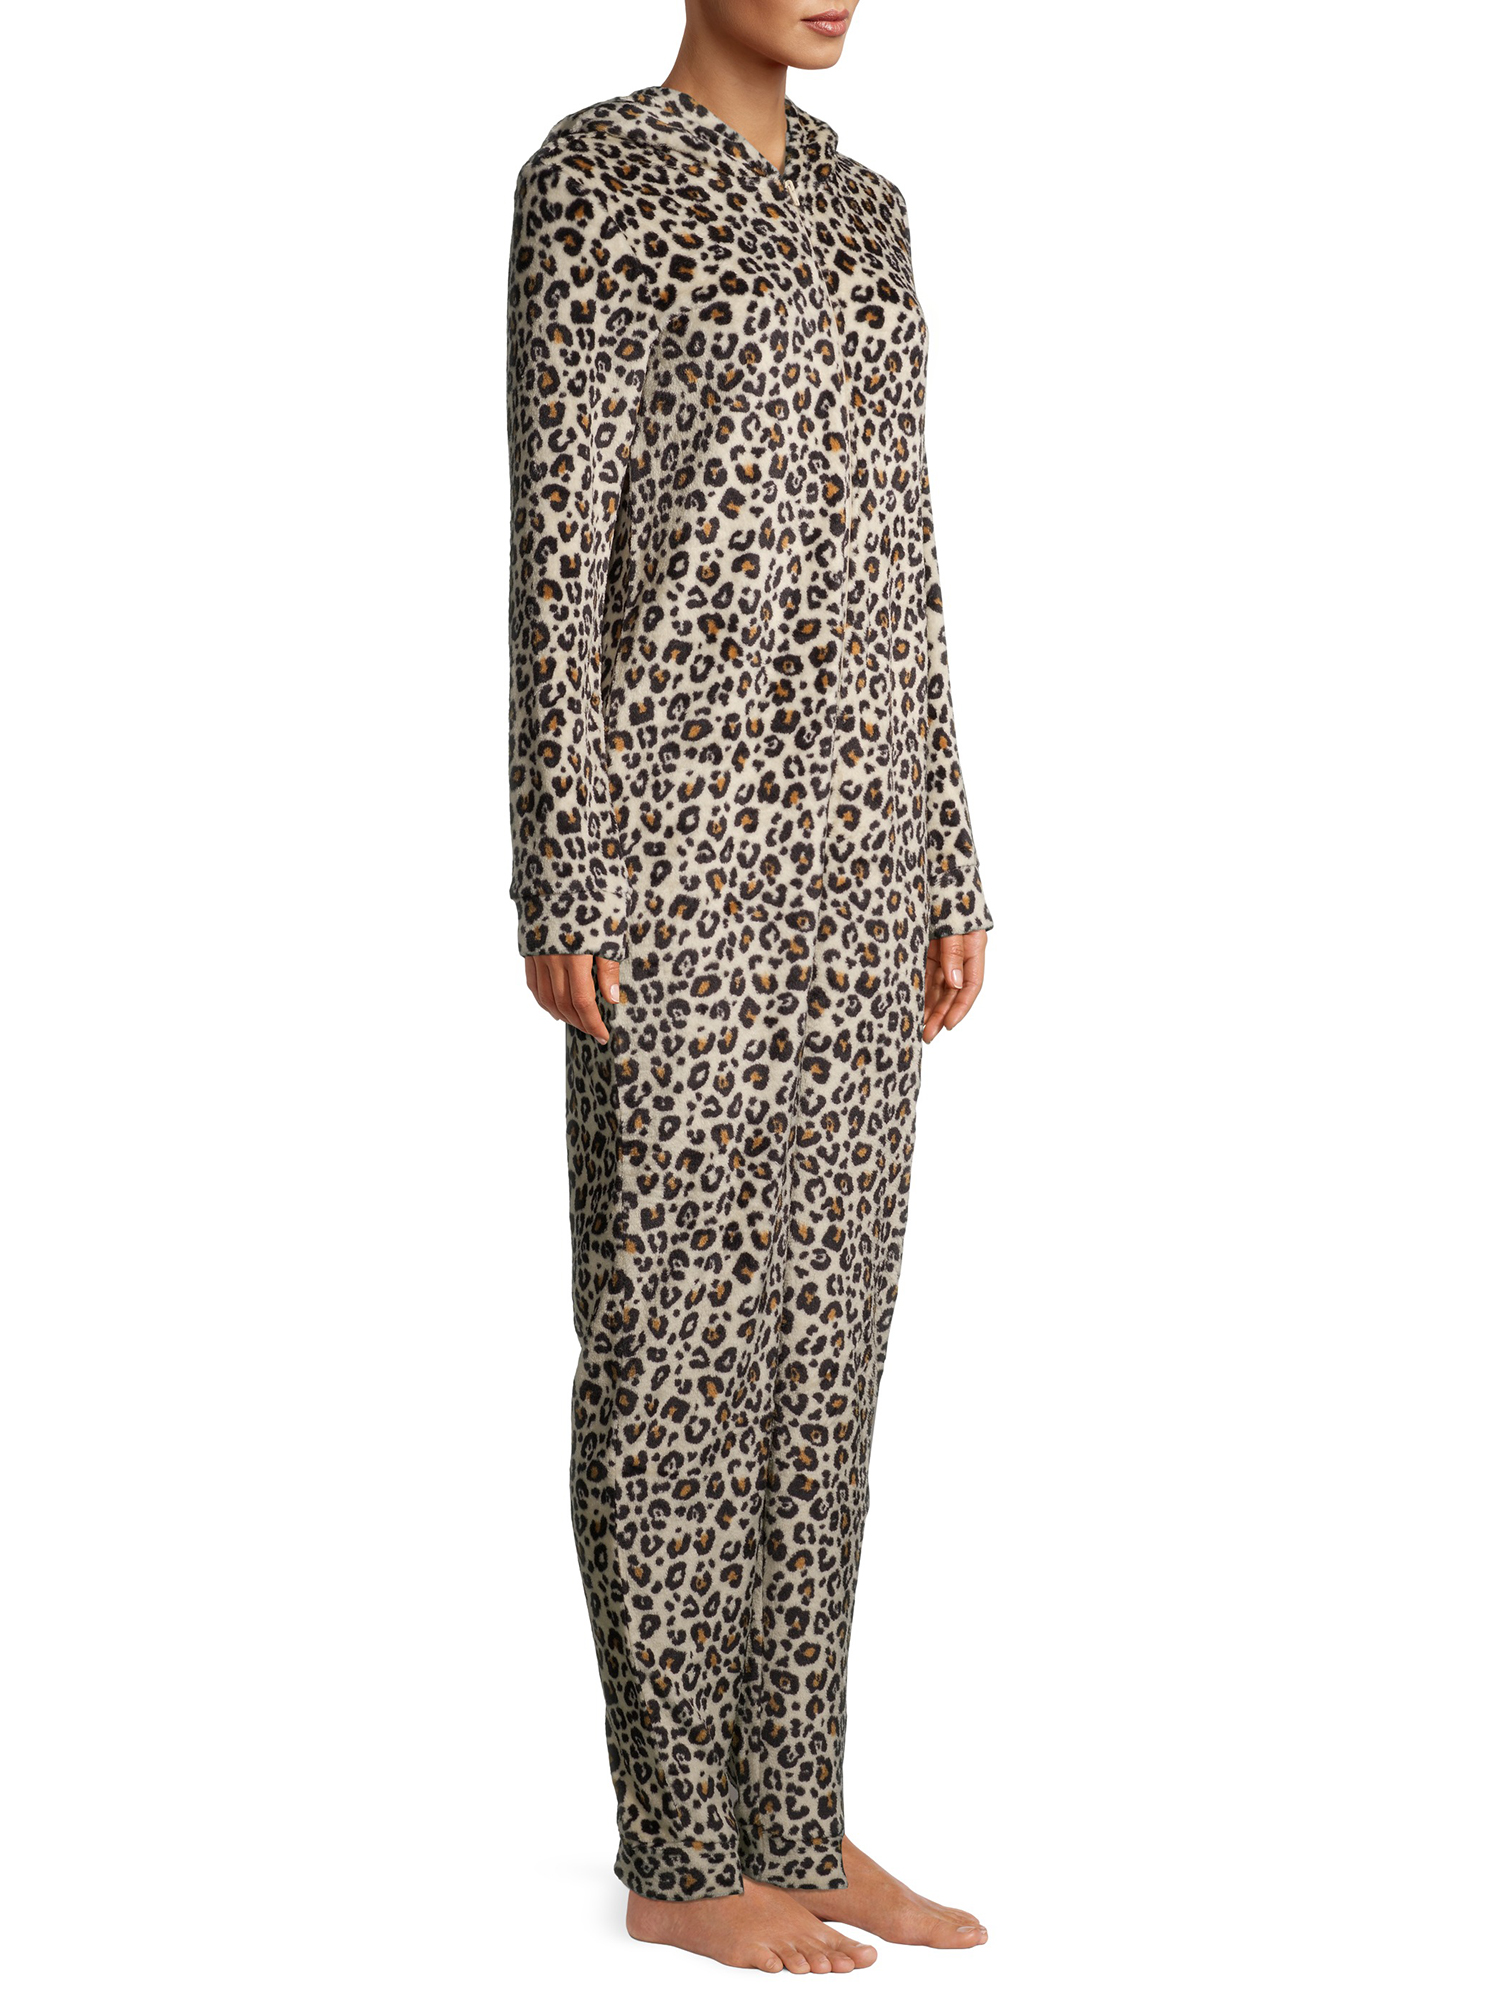 George Women's Leopard Print Union Suit - image 5 of 6